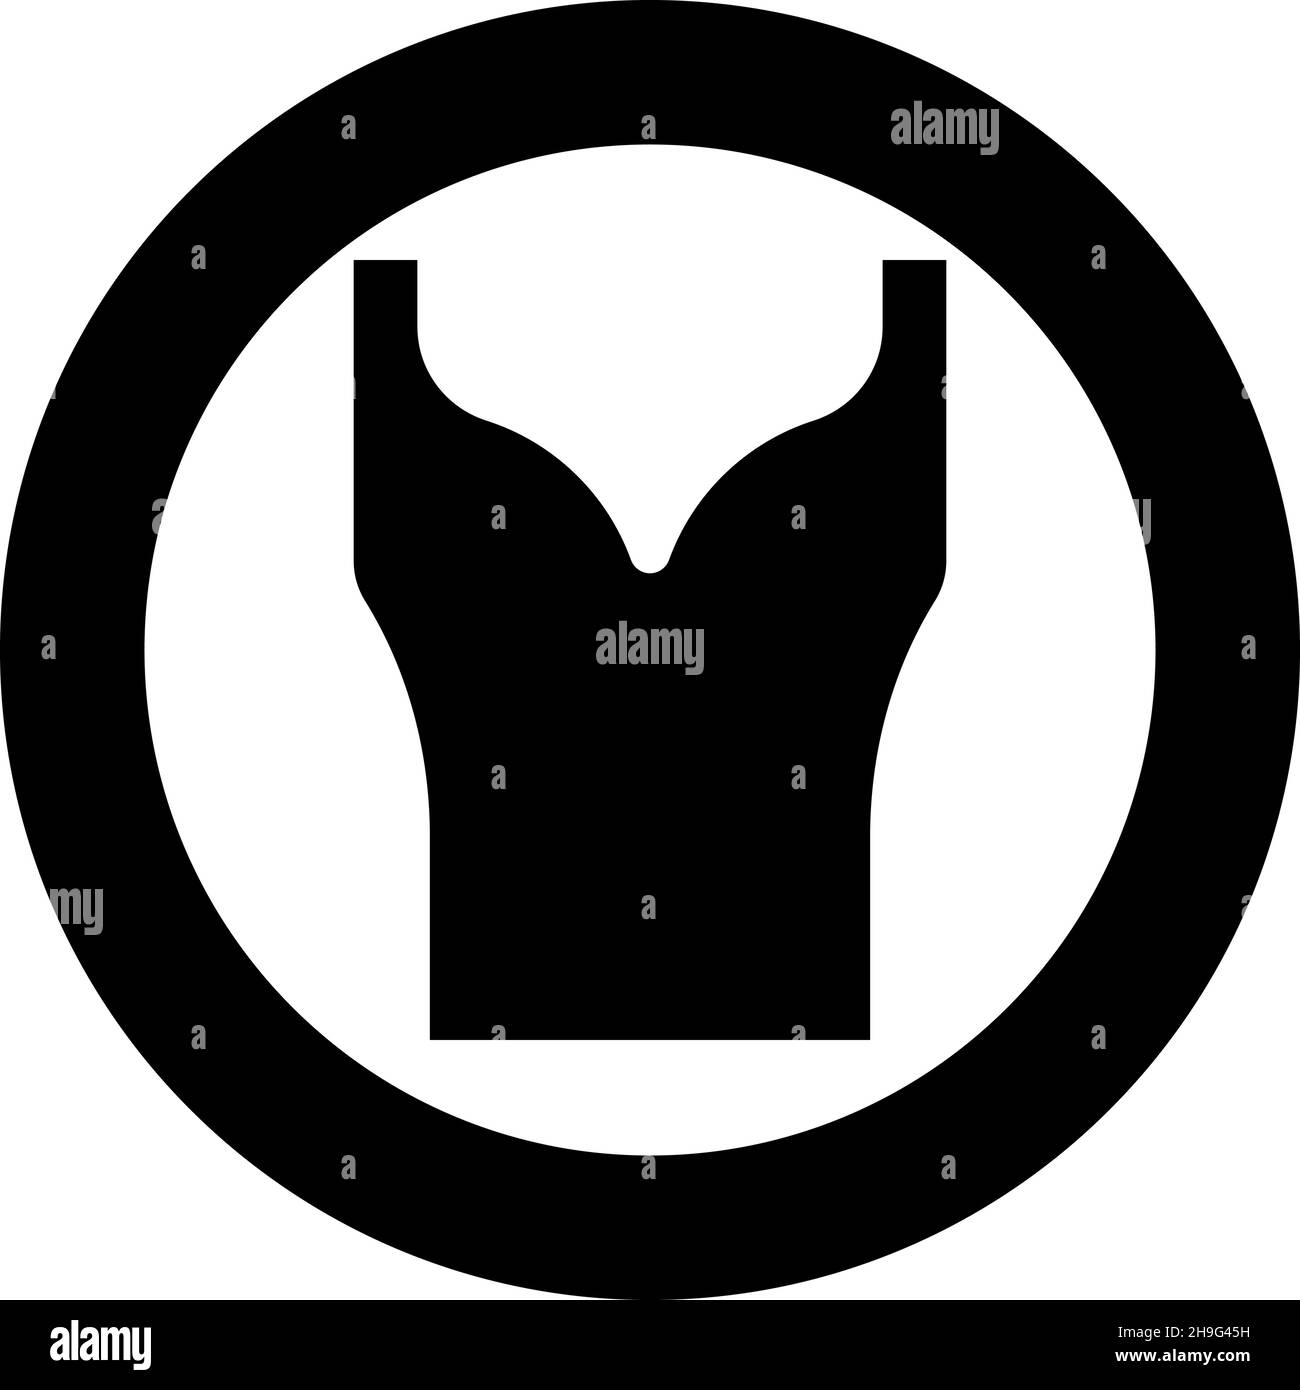 Damenbekleidung Top Kleid Jersey Hemd Bluse Pullover Singlet Symbol im Kreis rund schwarz Farbe Vektor Illustration Bild solide Kontur Stil einfach Stock Vektor